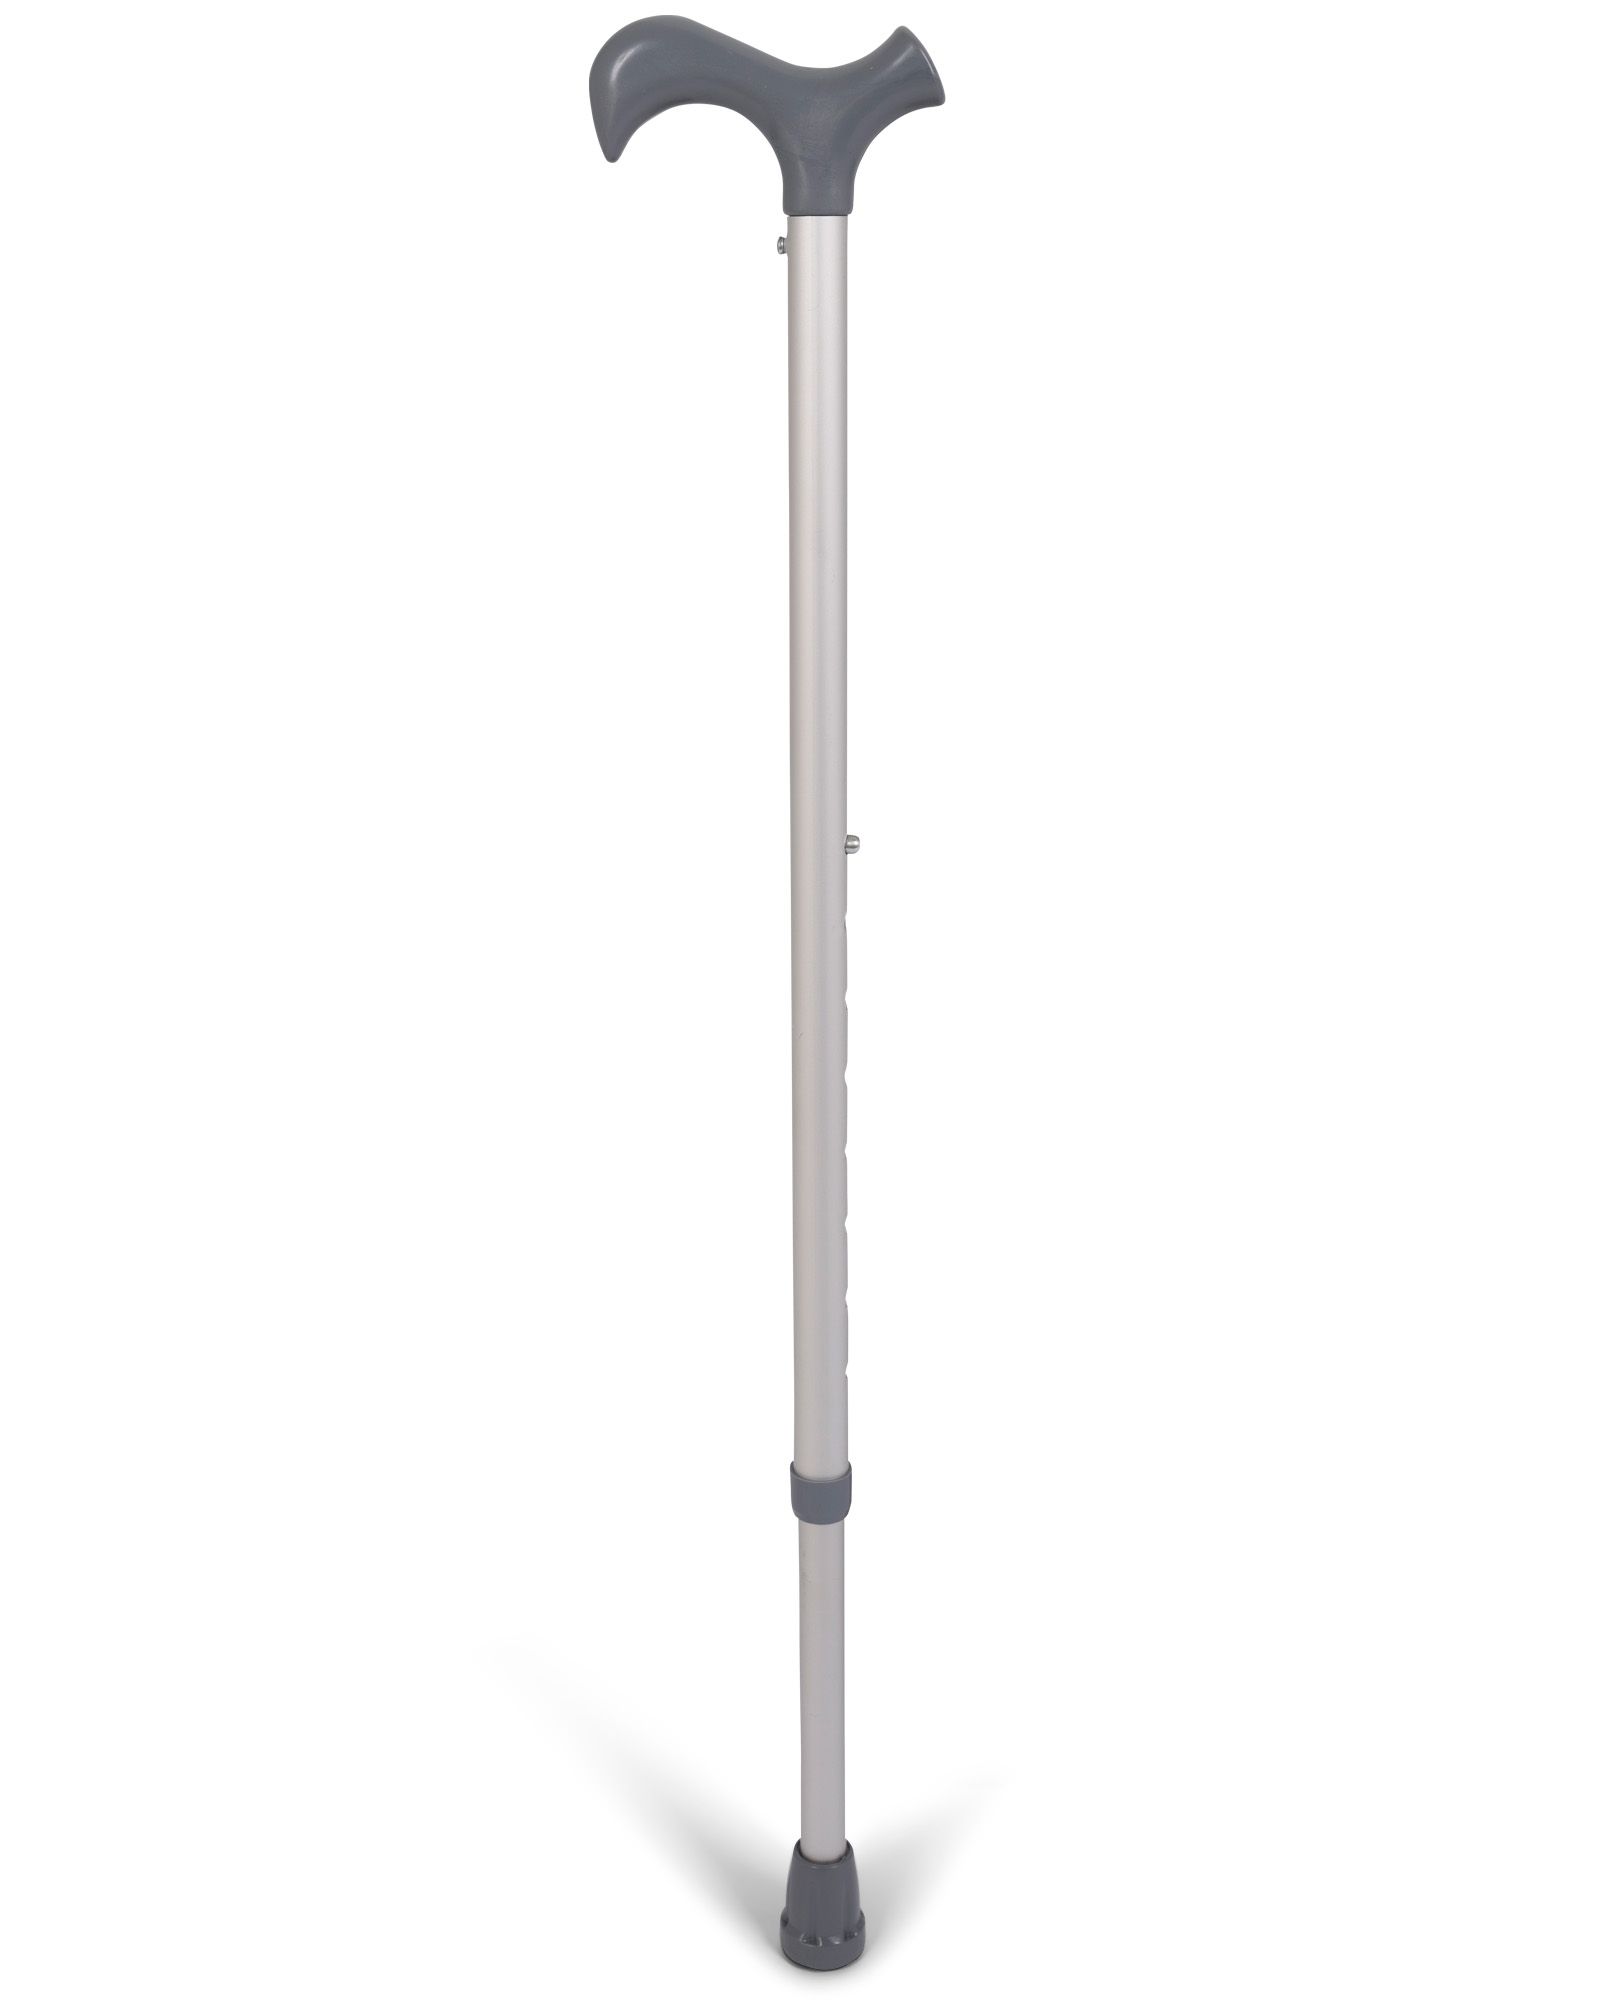 Novamed Anatomic Aluminum Walking Stick for sale